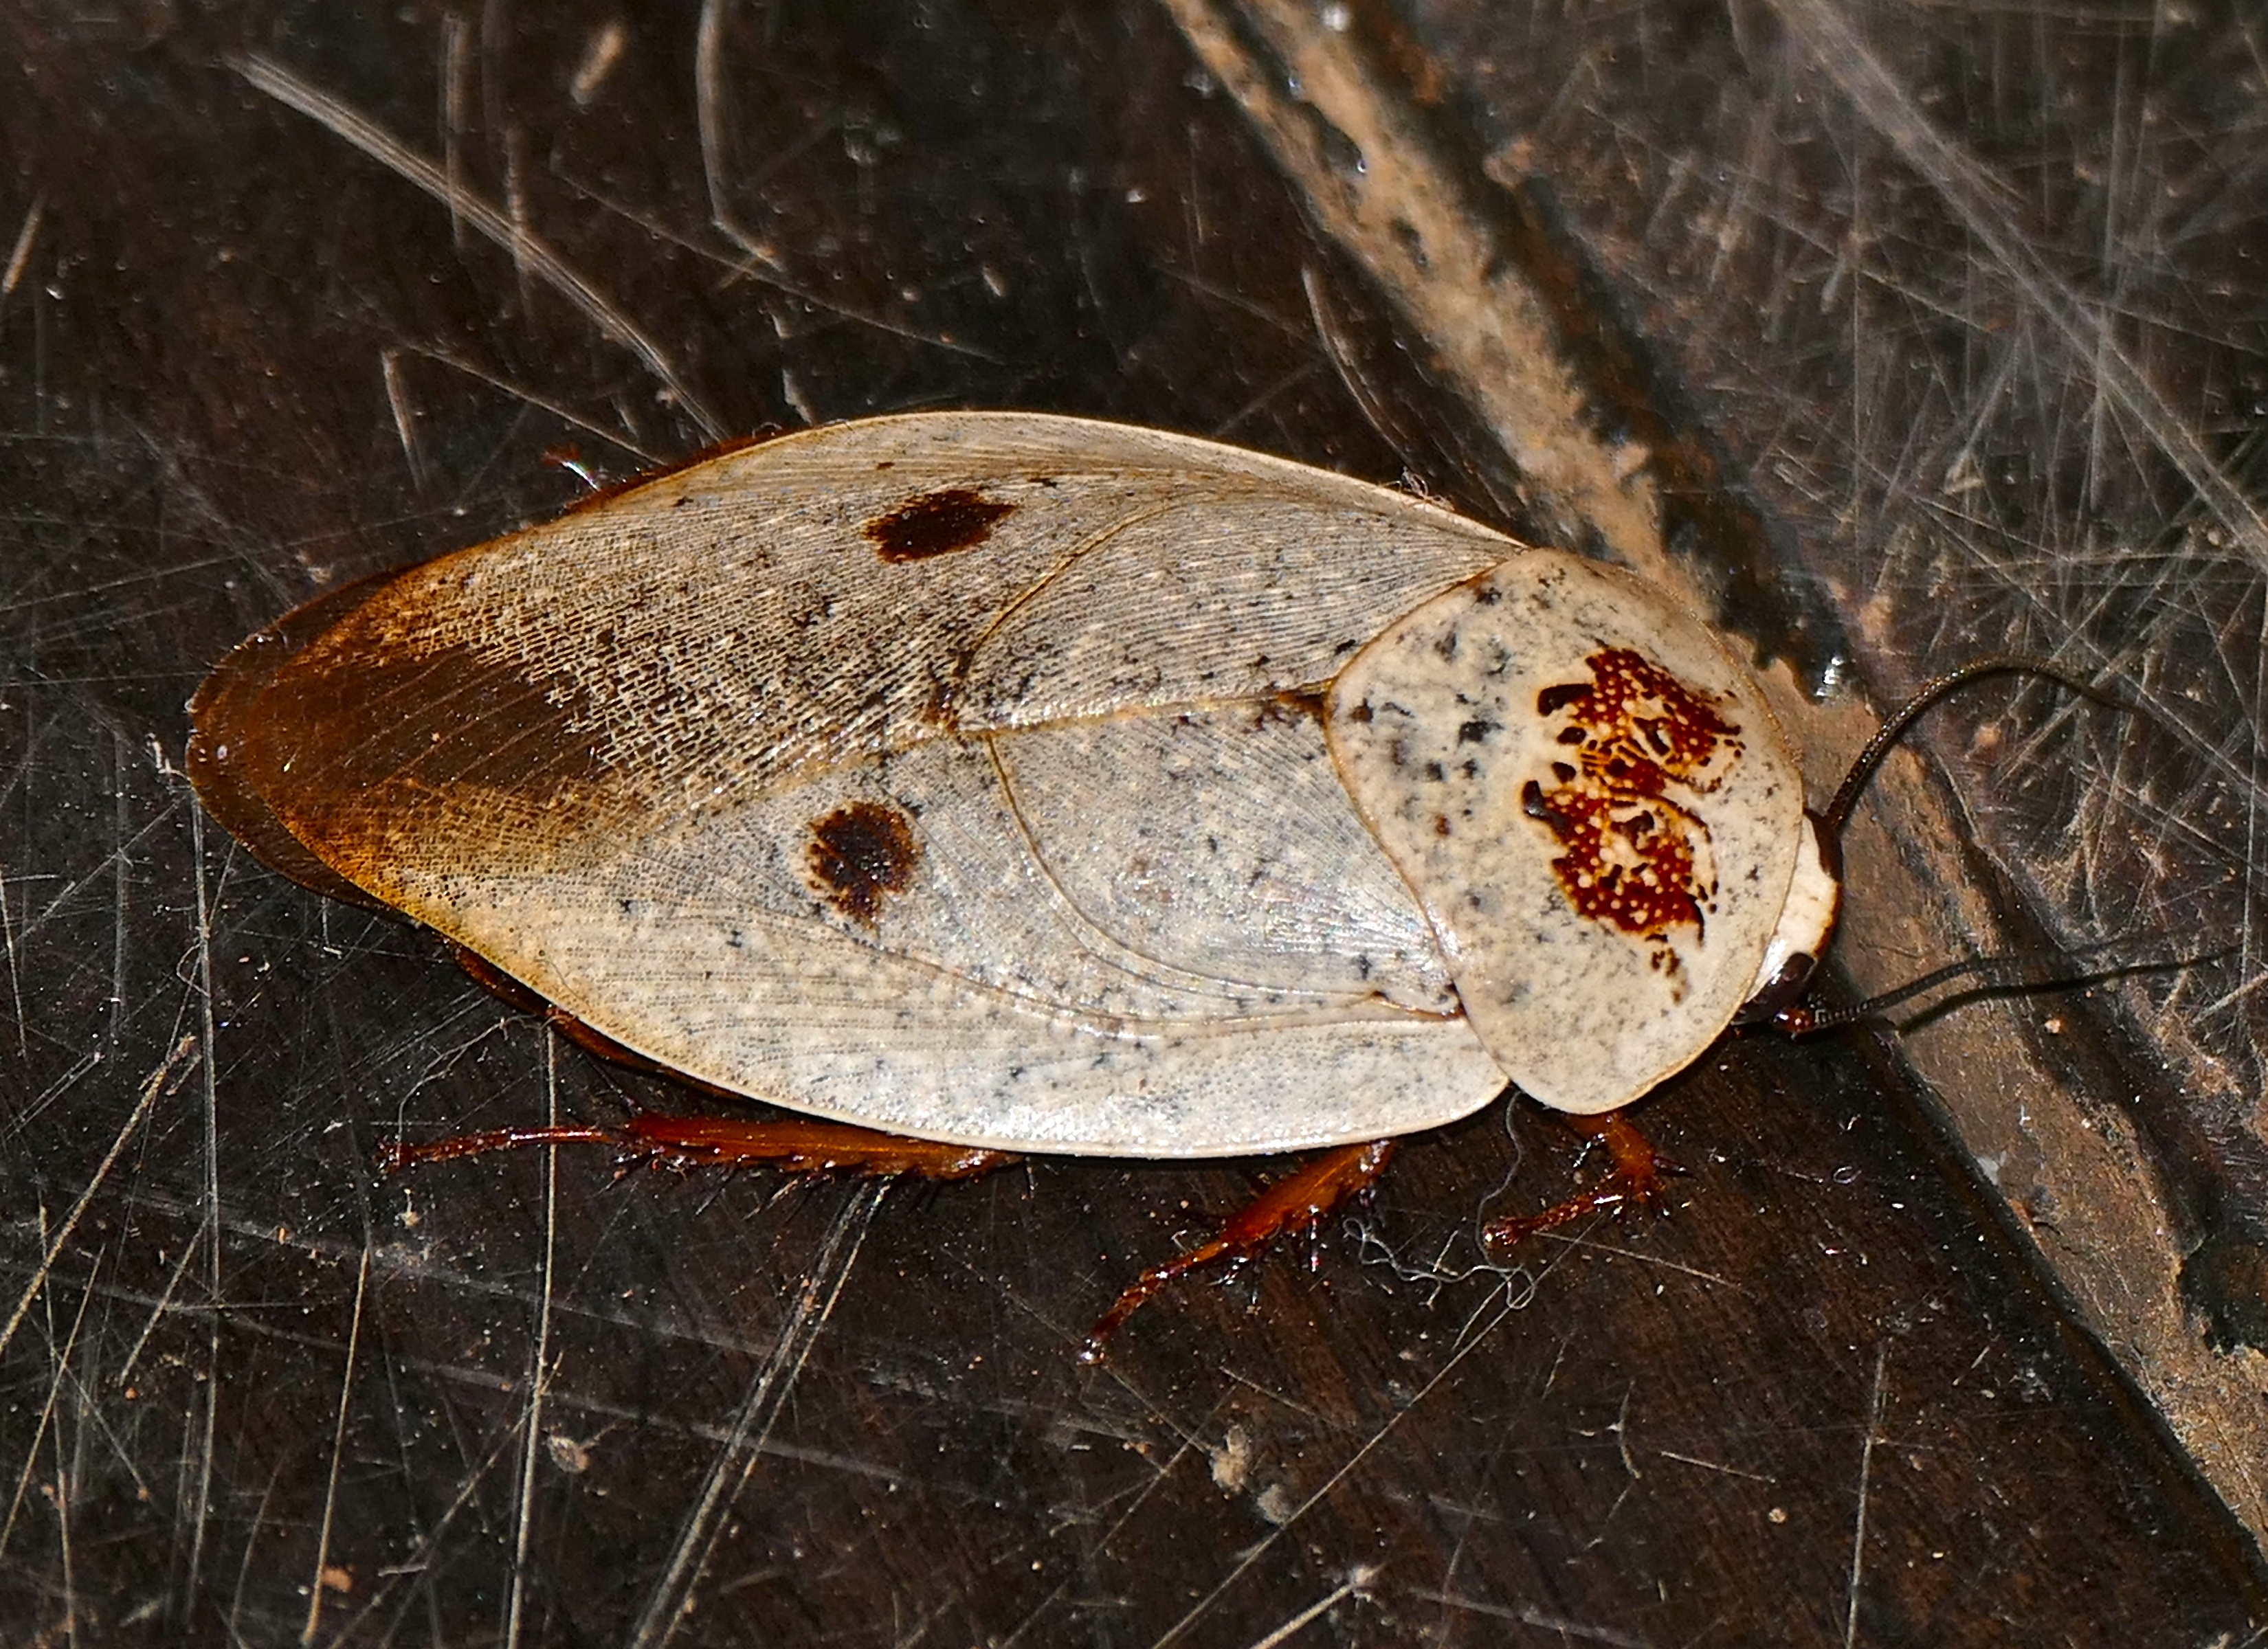 Tree Cockroach (Gyna caffrorum) (16544688867)